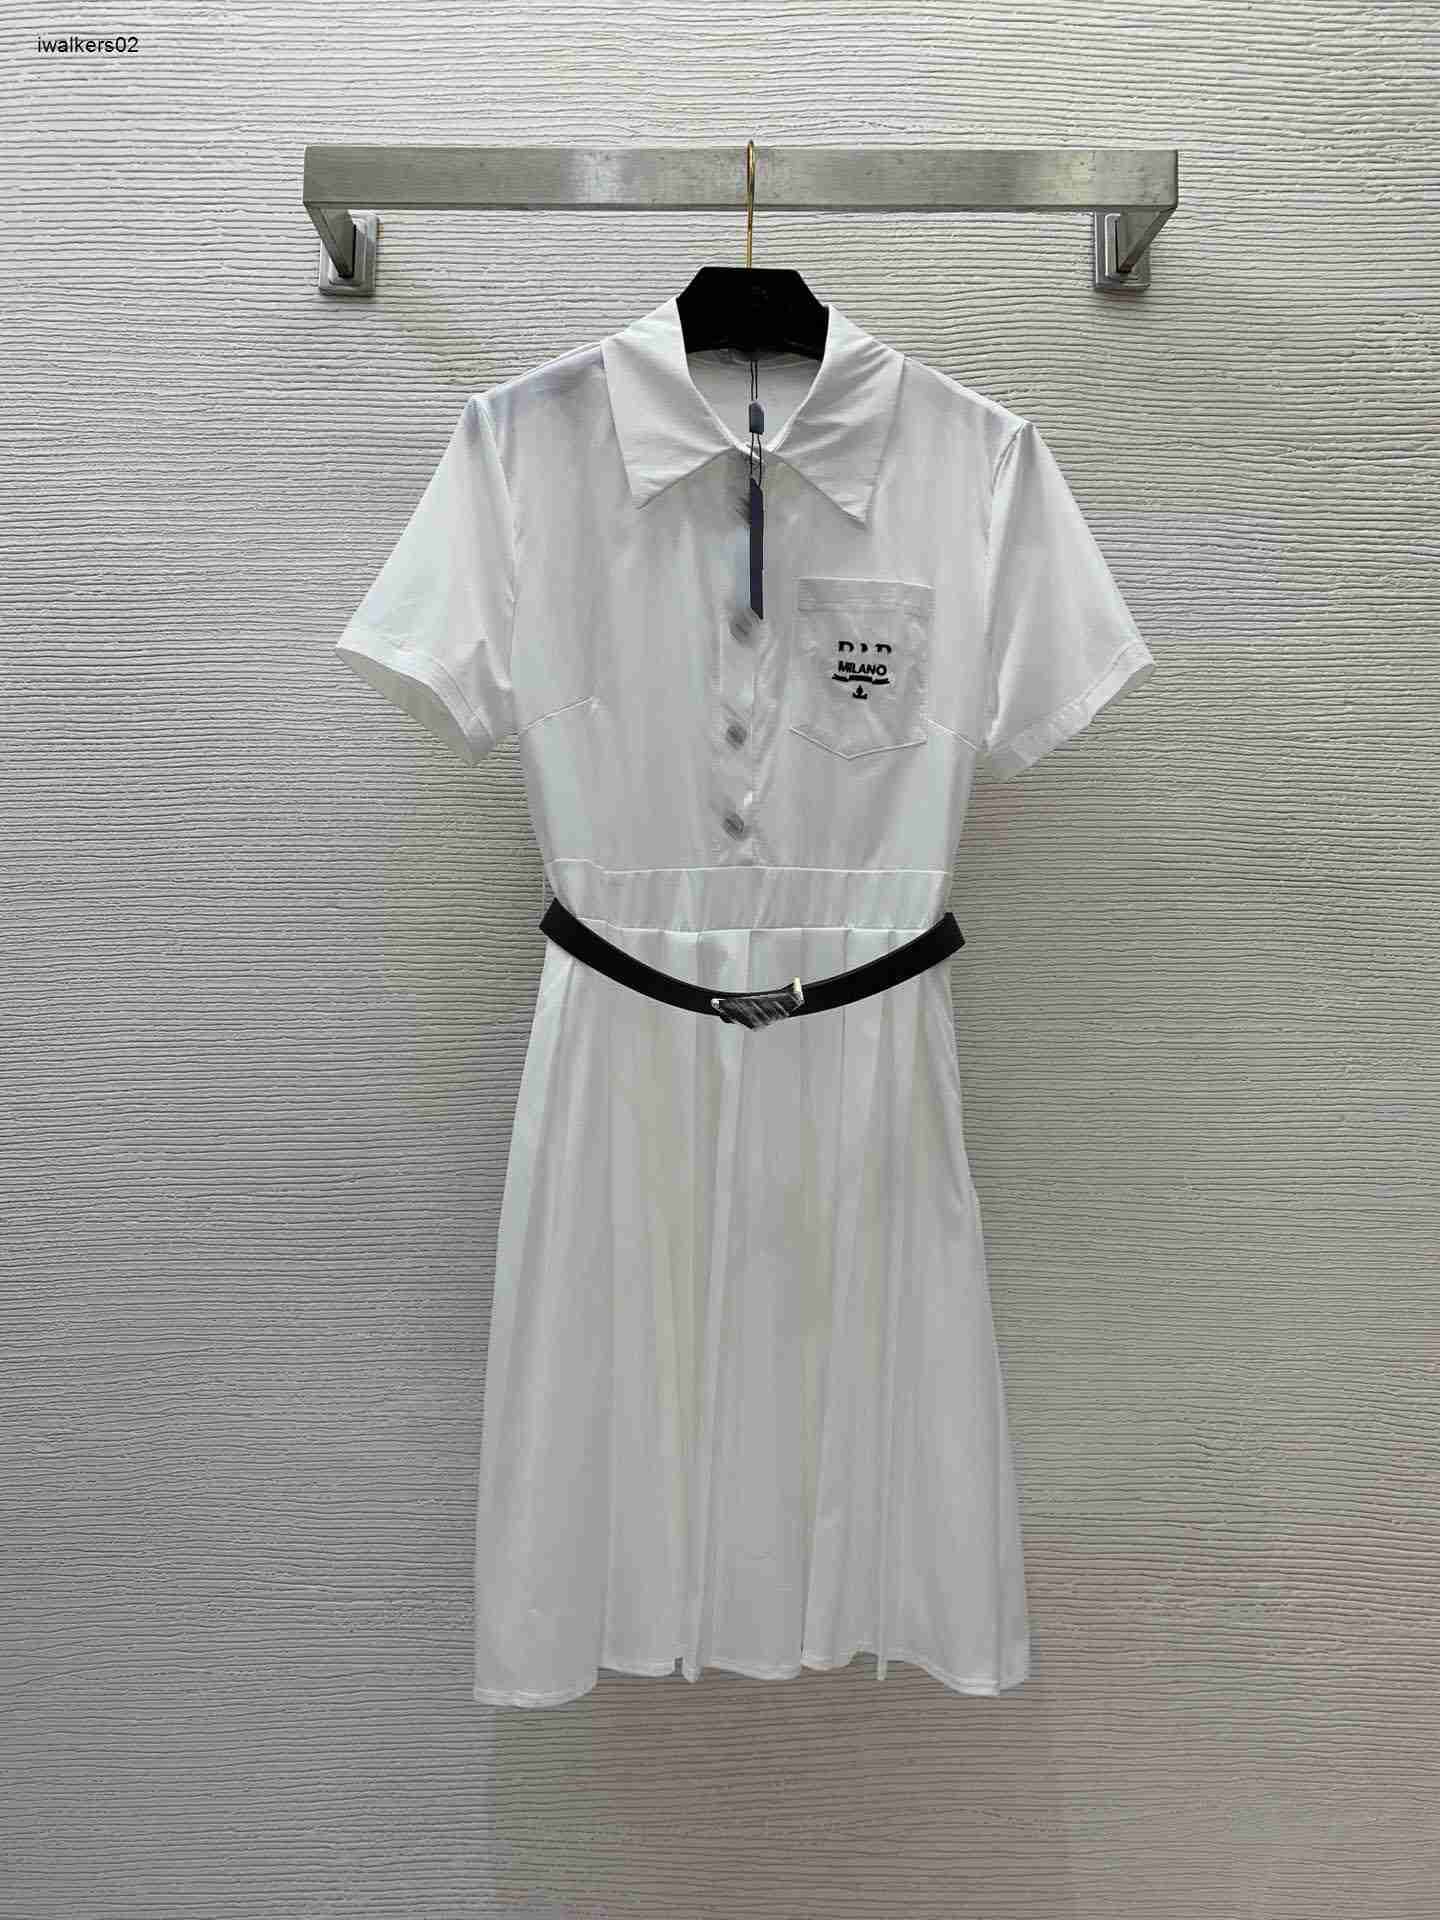 #4-white dress